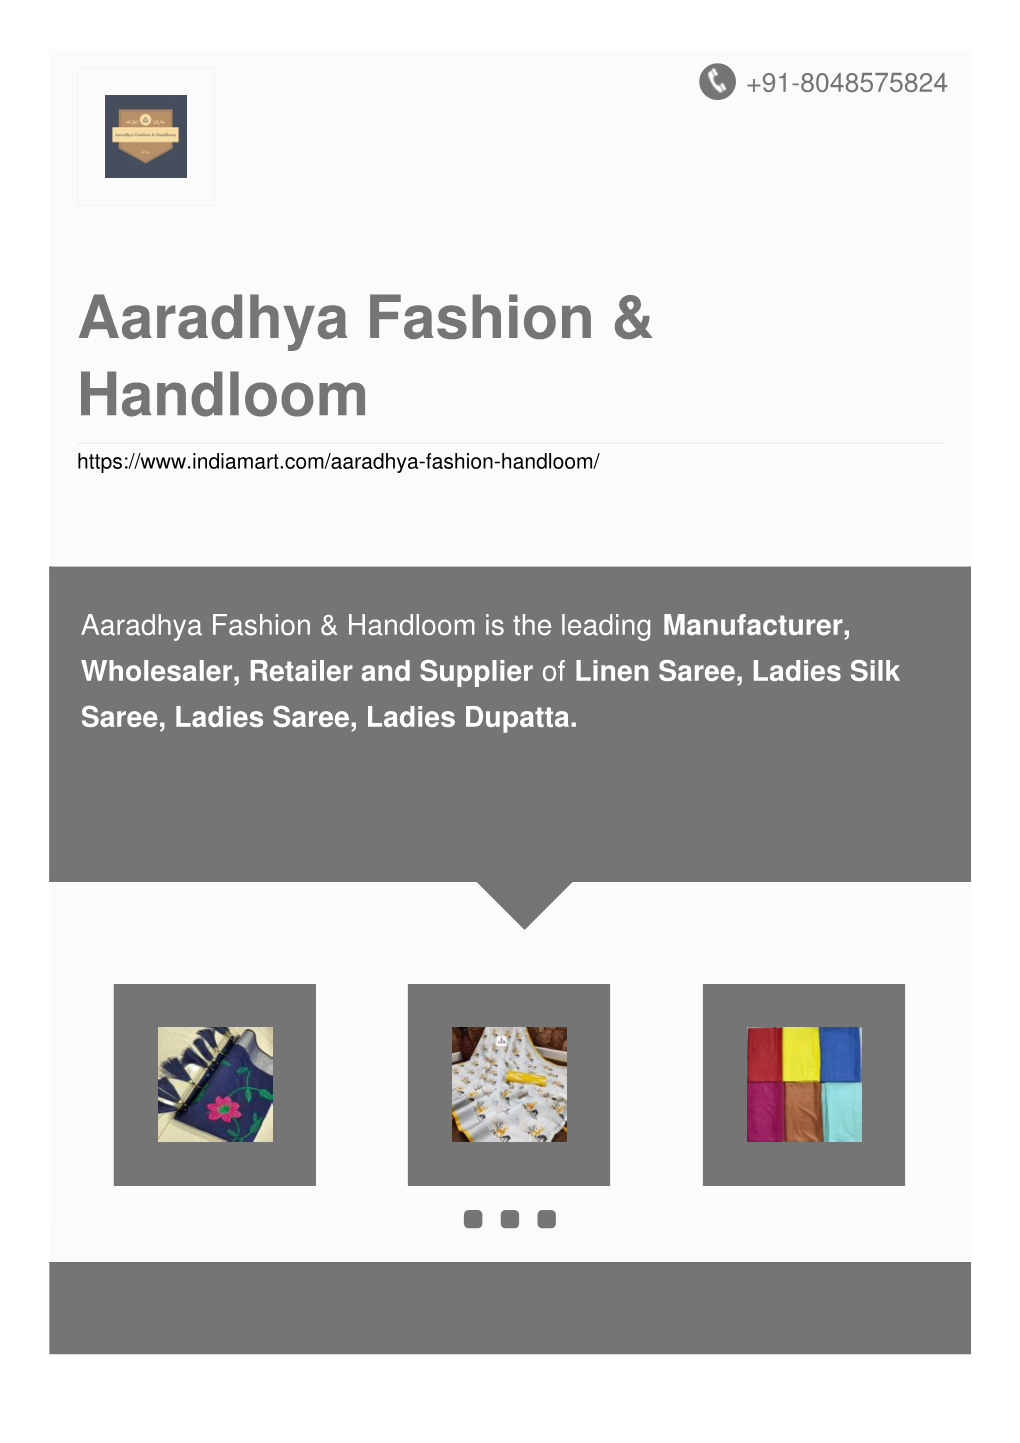 Aaradhya Fashion & Handloom